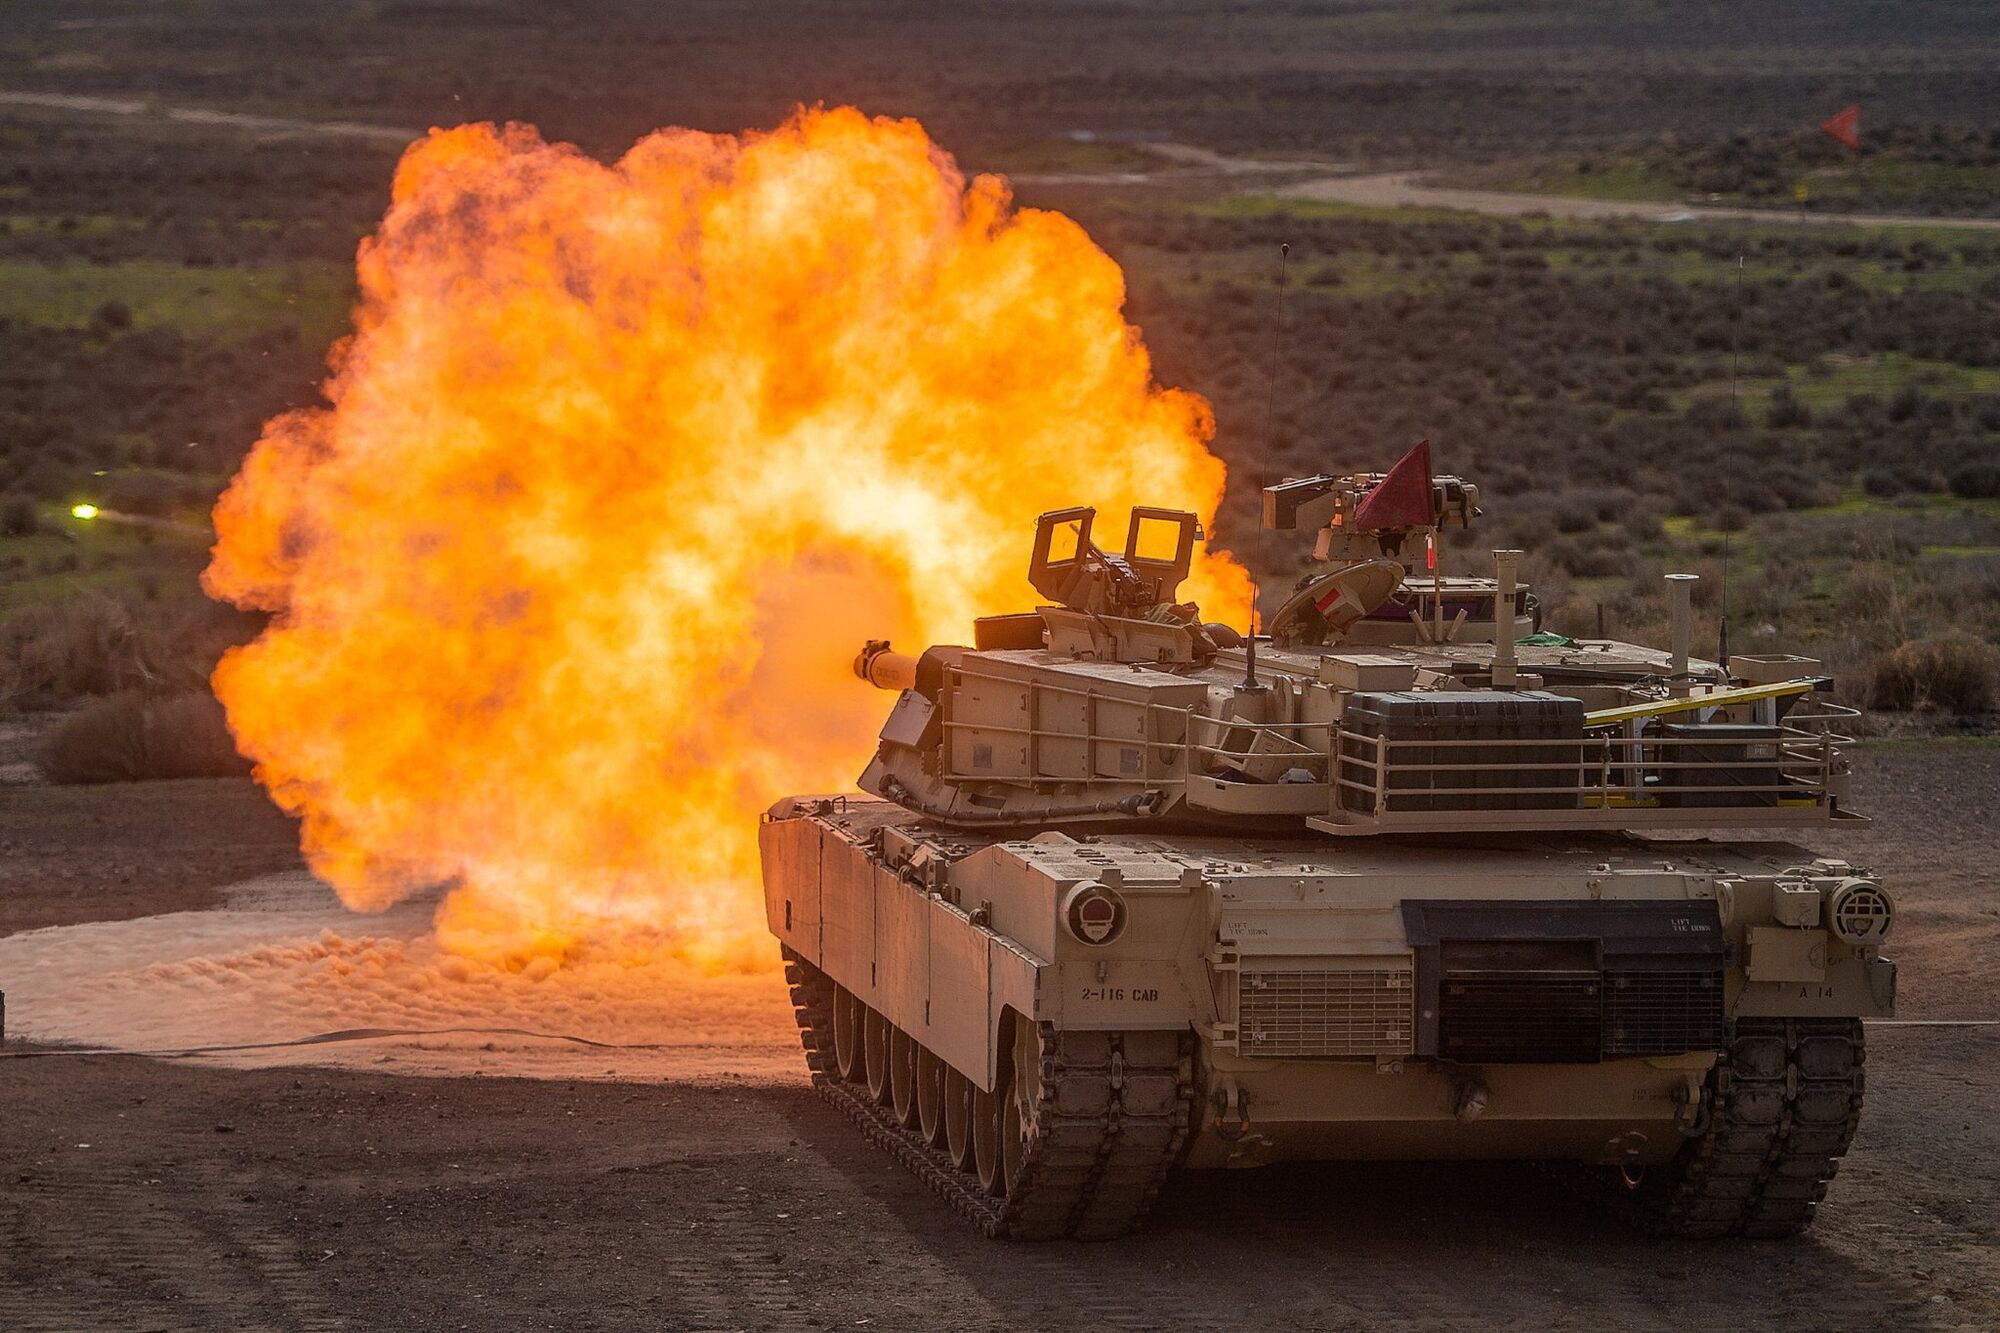 An M1 Abrams tank firing